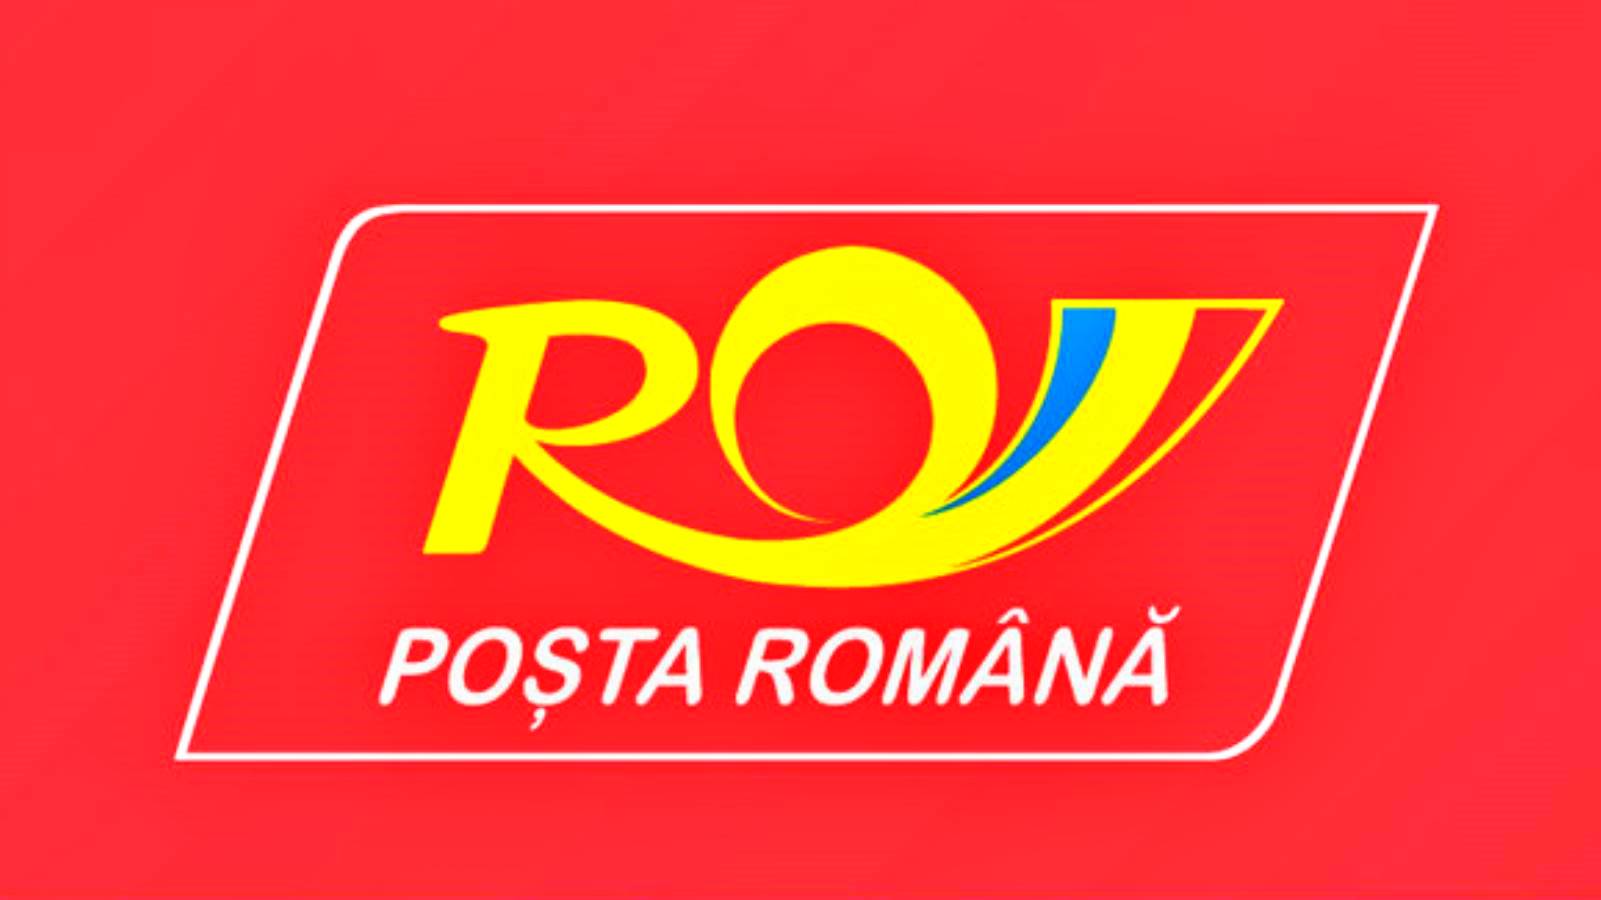 Versicherung der rumänischen Post für Sendungen gegen Diebstahl und Zerstörung